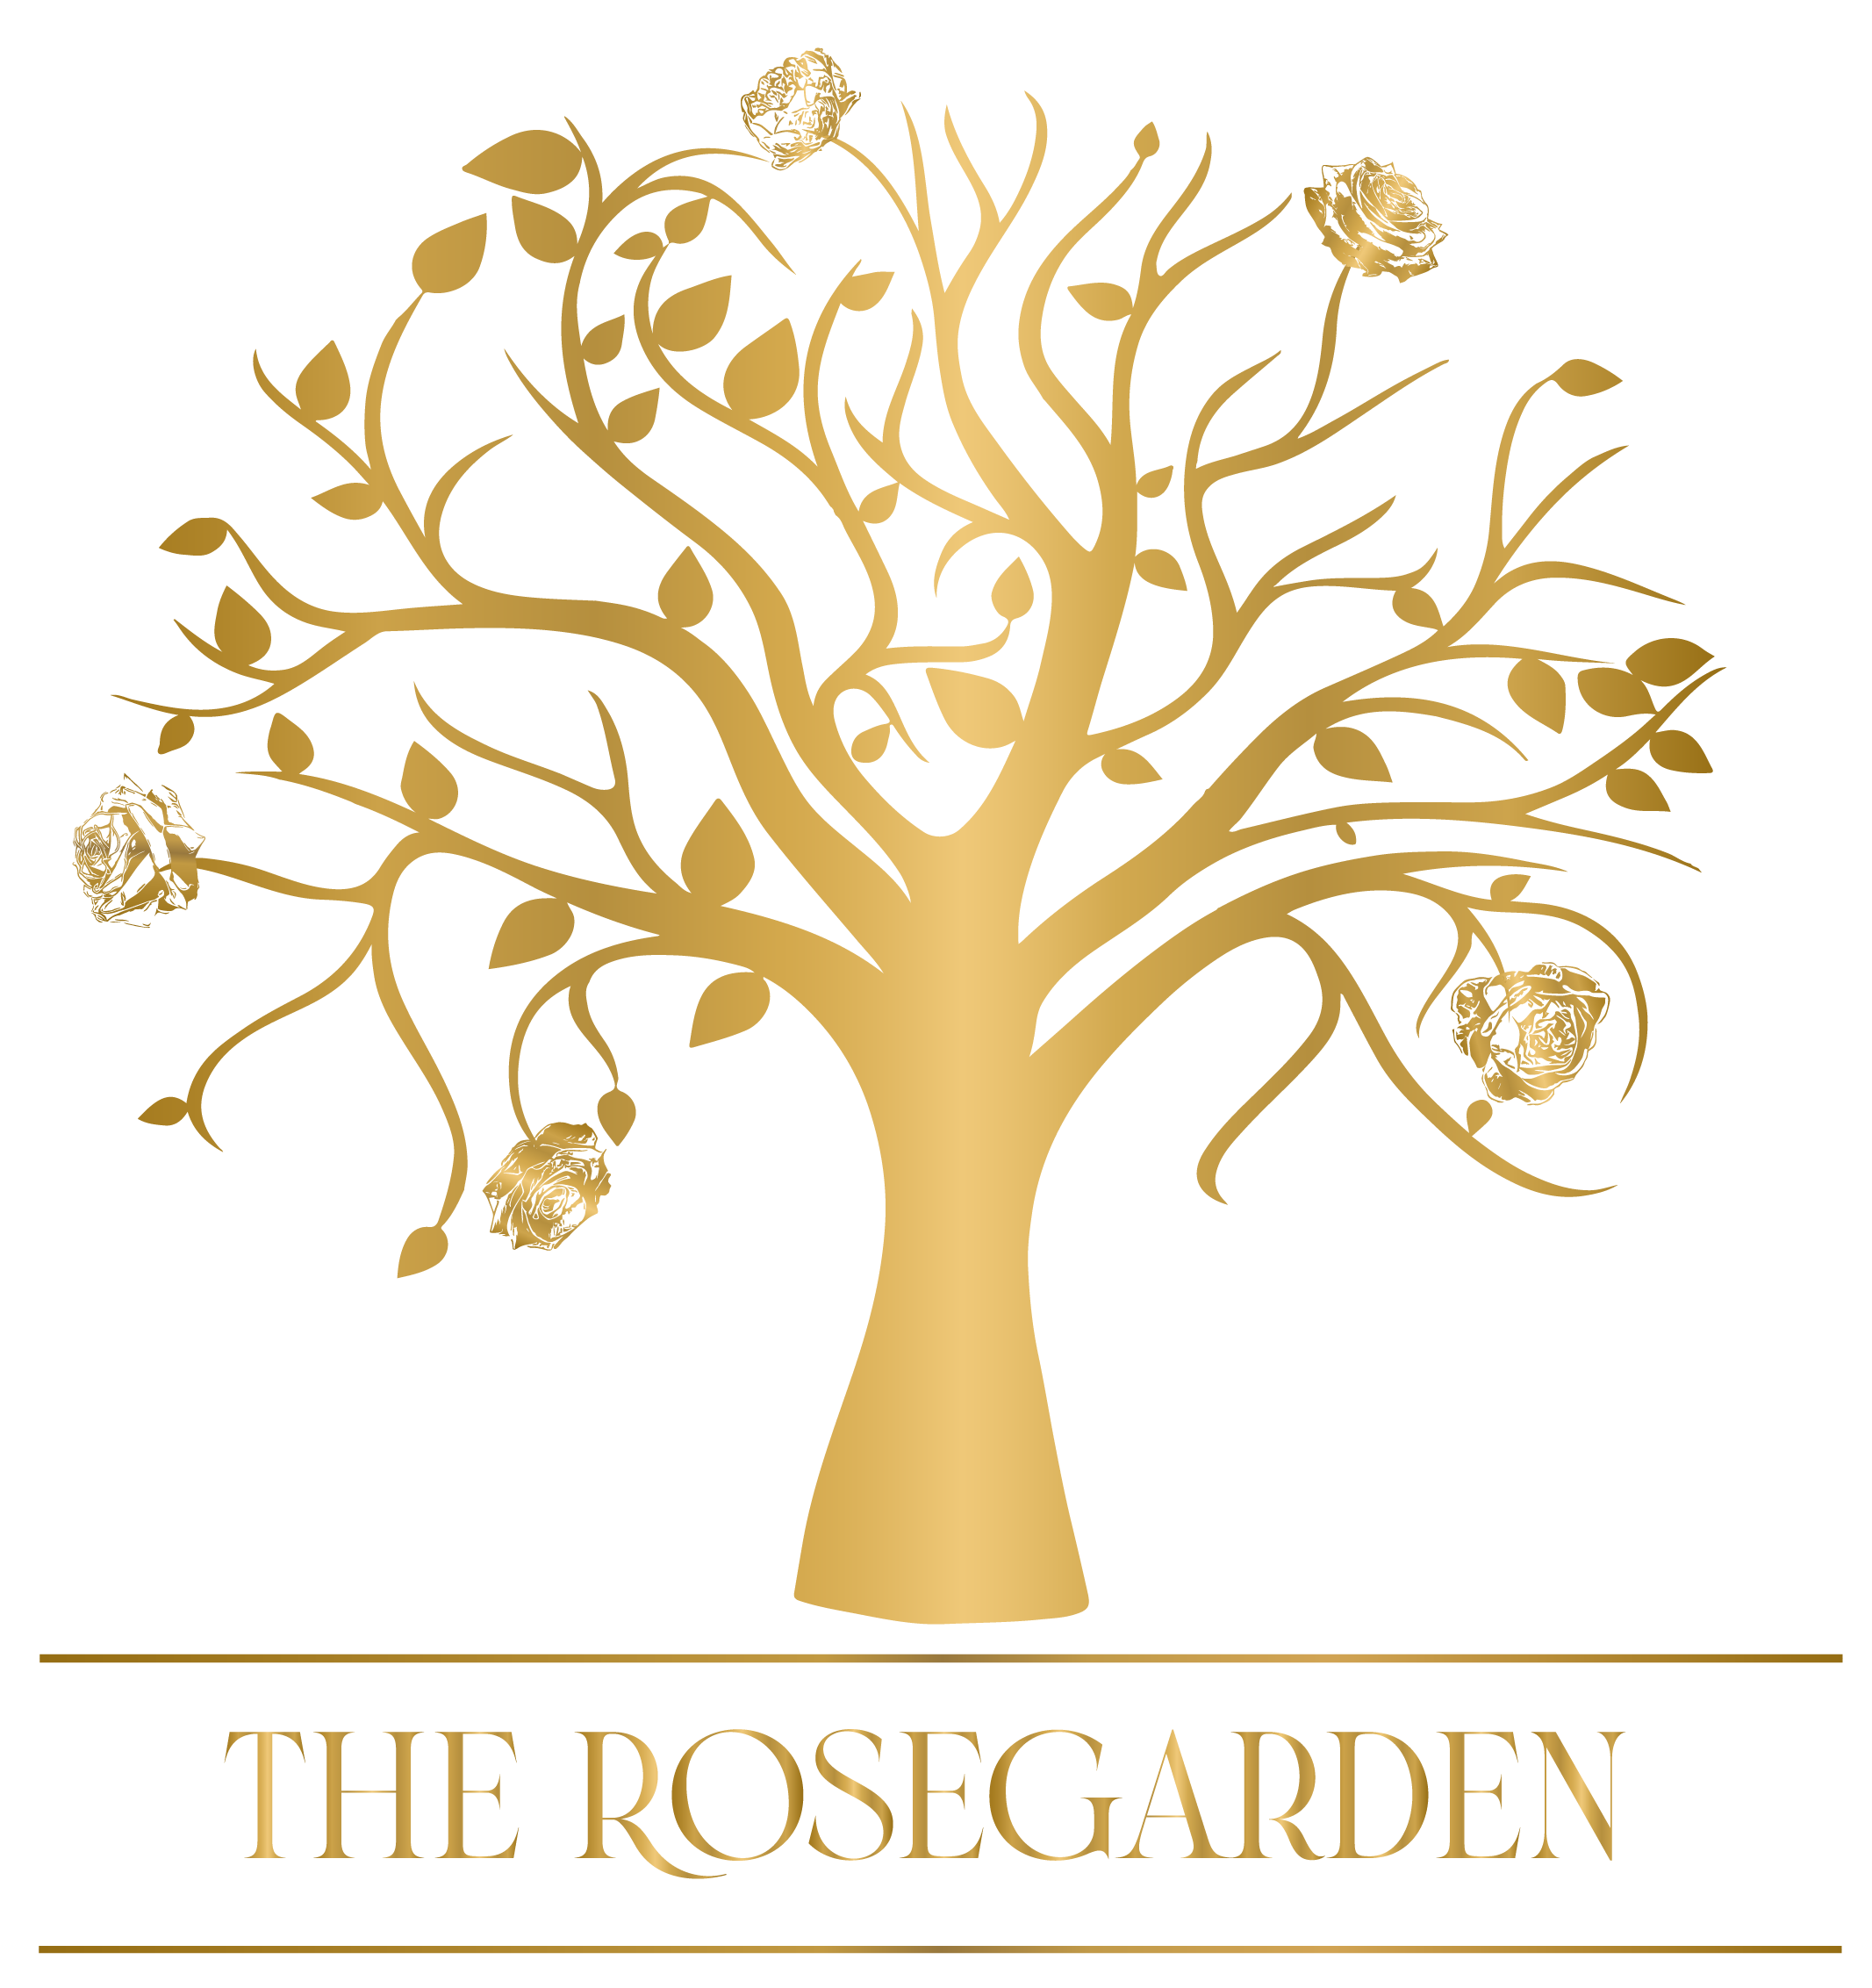 The Rosegarden